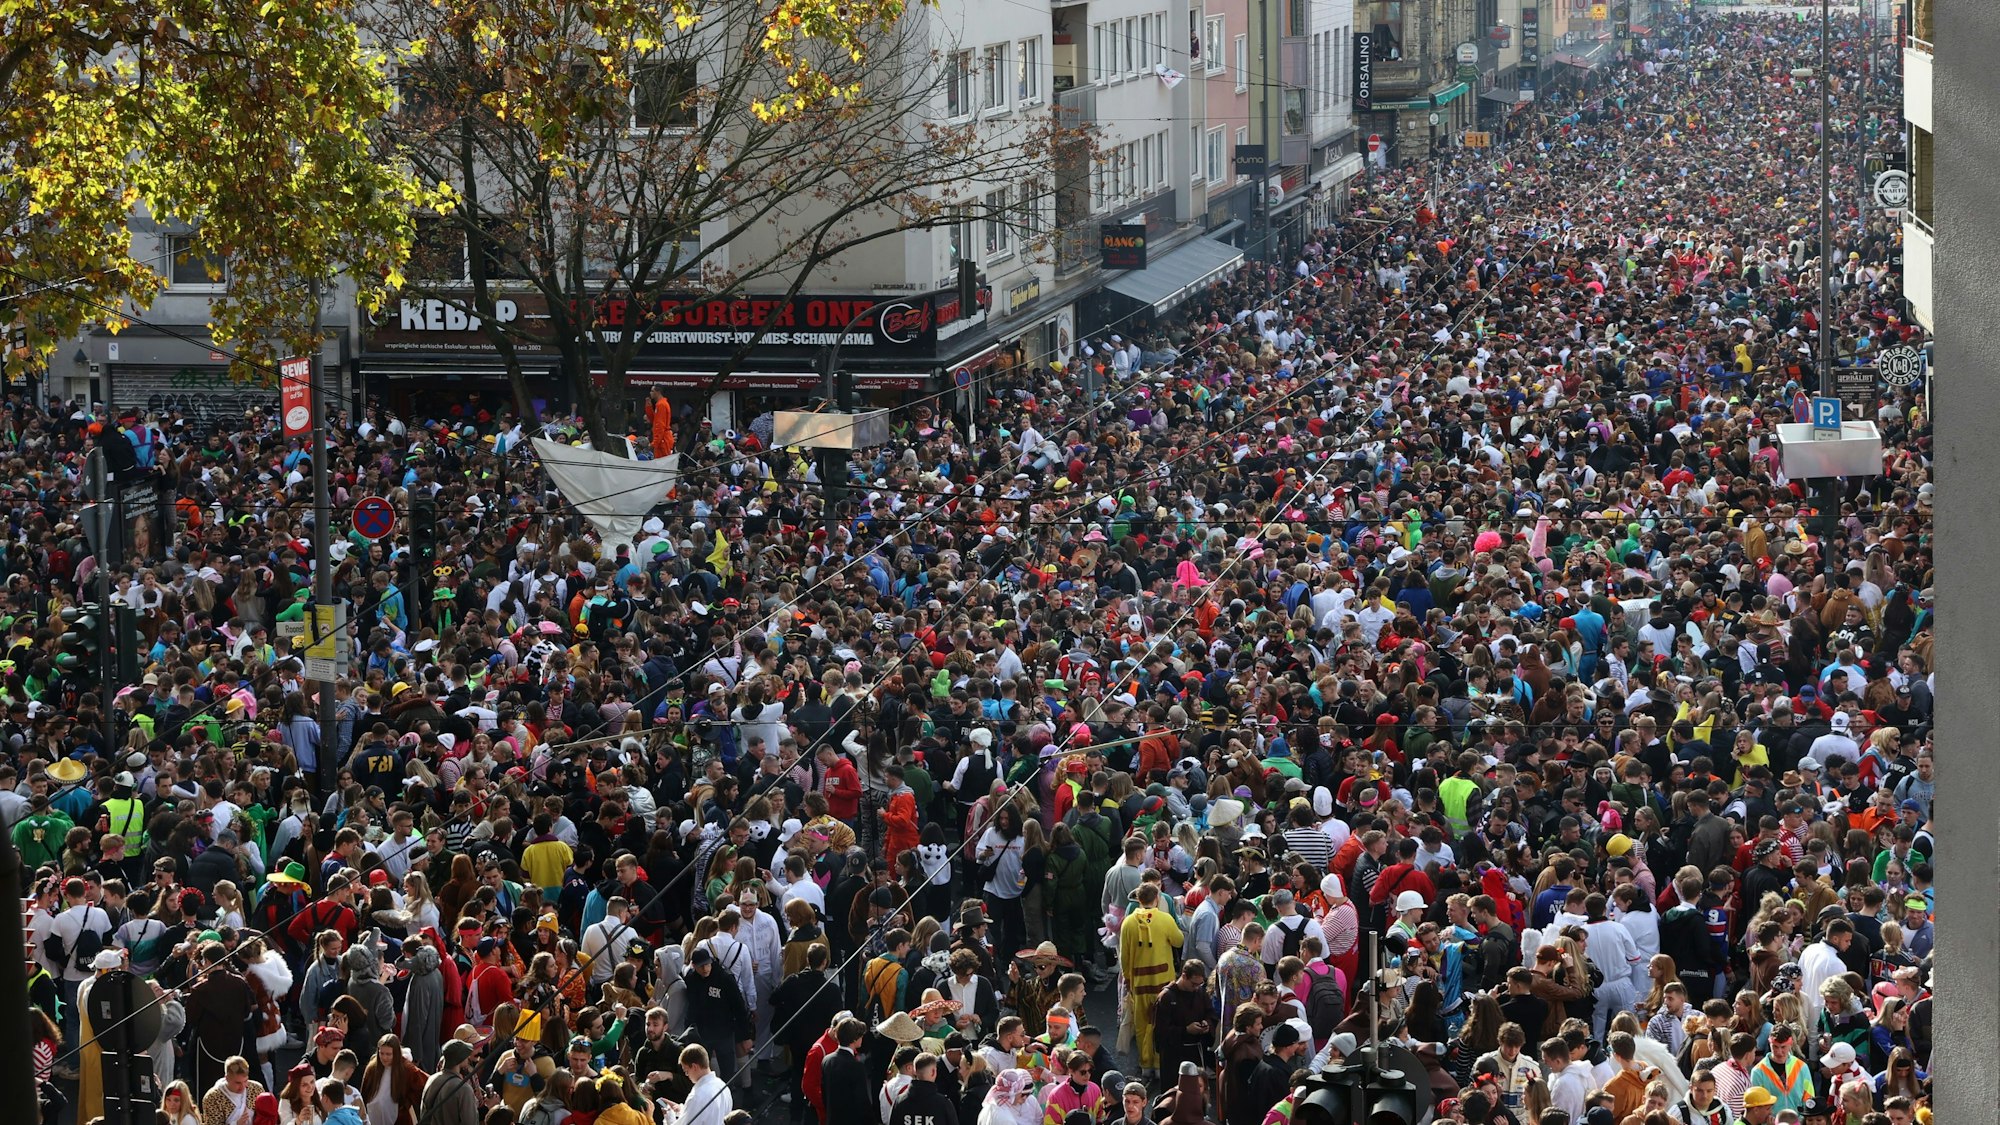 Dicht gedrängt stehen kostümierte Menschen am 11.11. auf der Zülpicher Straße zusammen.